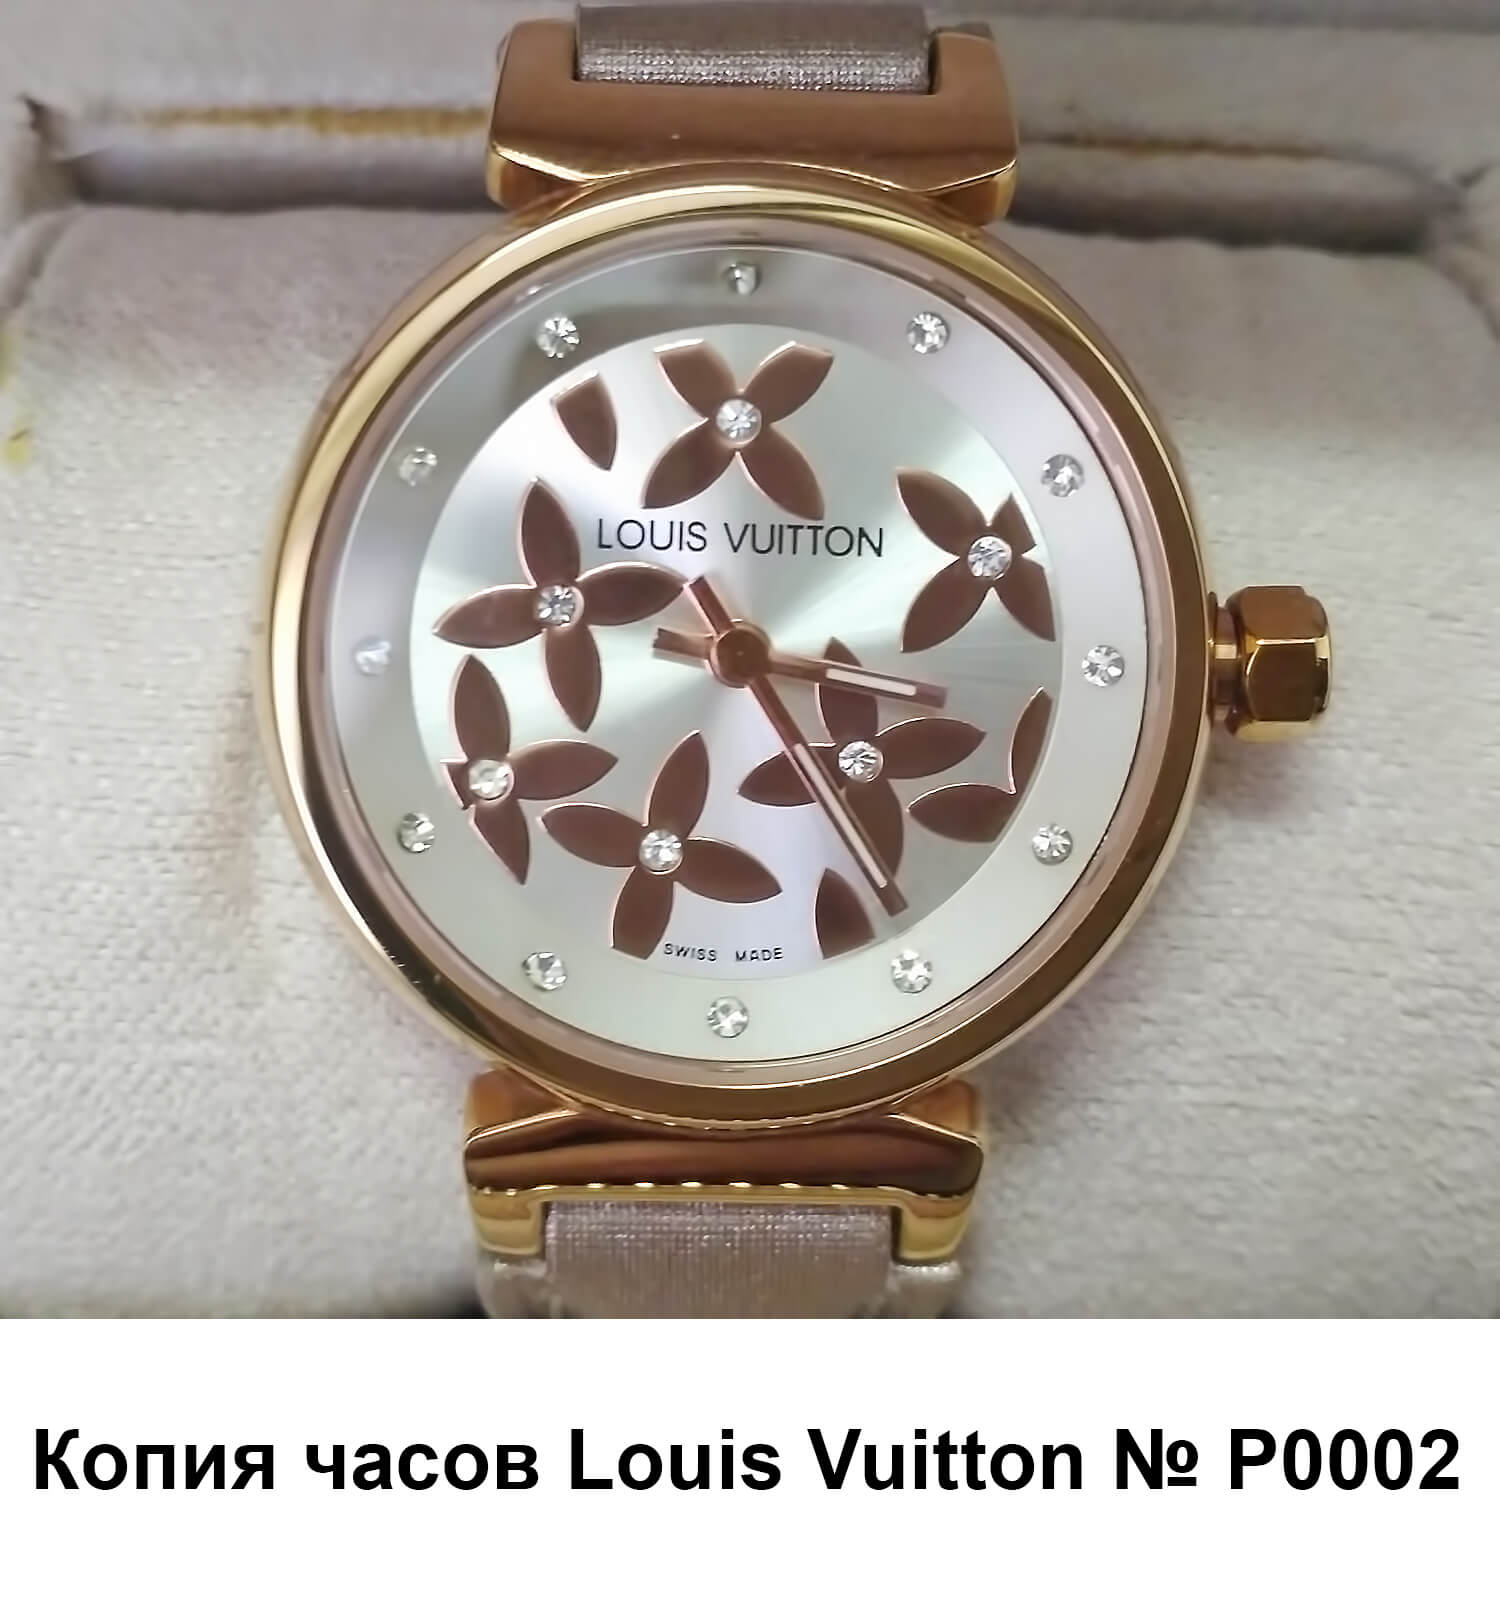 Реплика часов Louis Vuitton Tambour Elegants с золотистым корпусом и бежевым ремешком